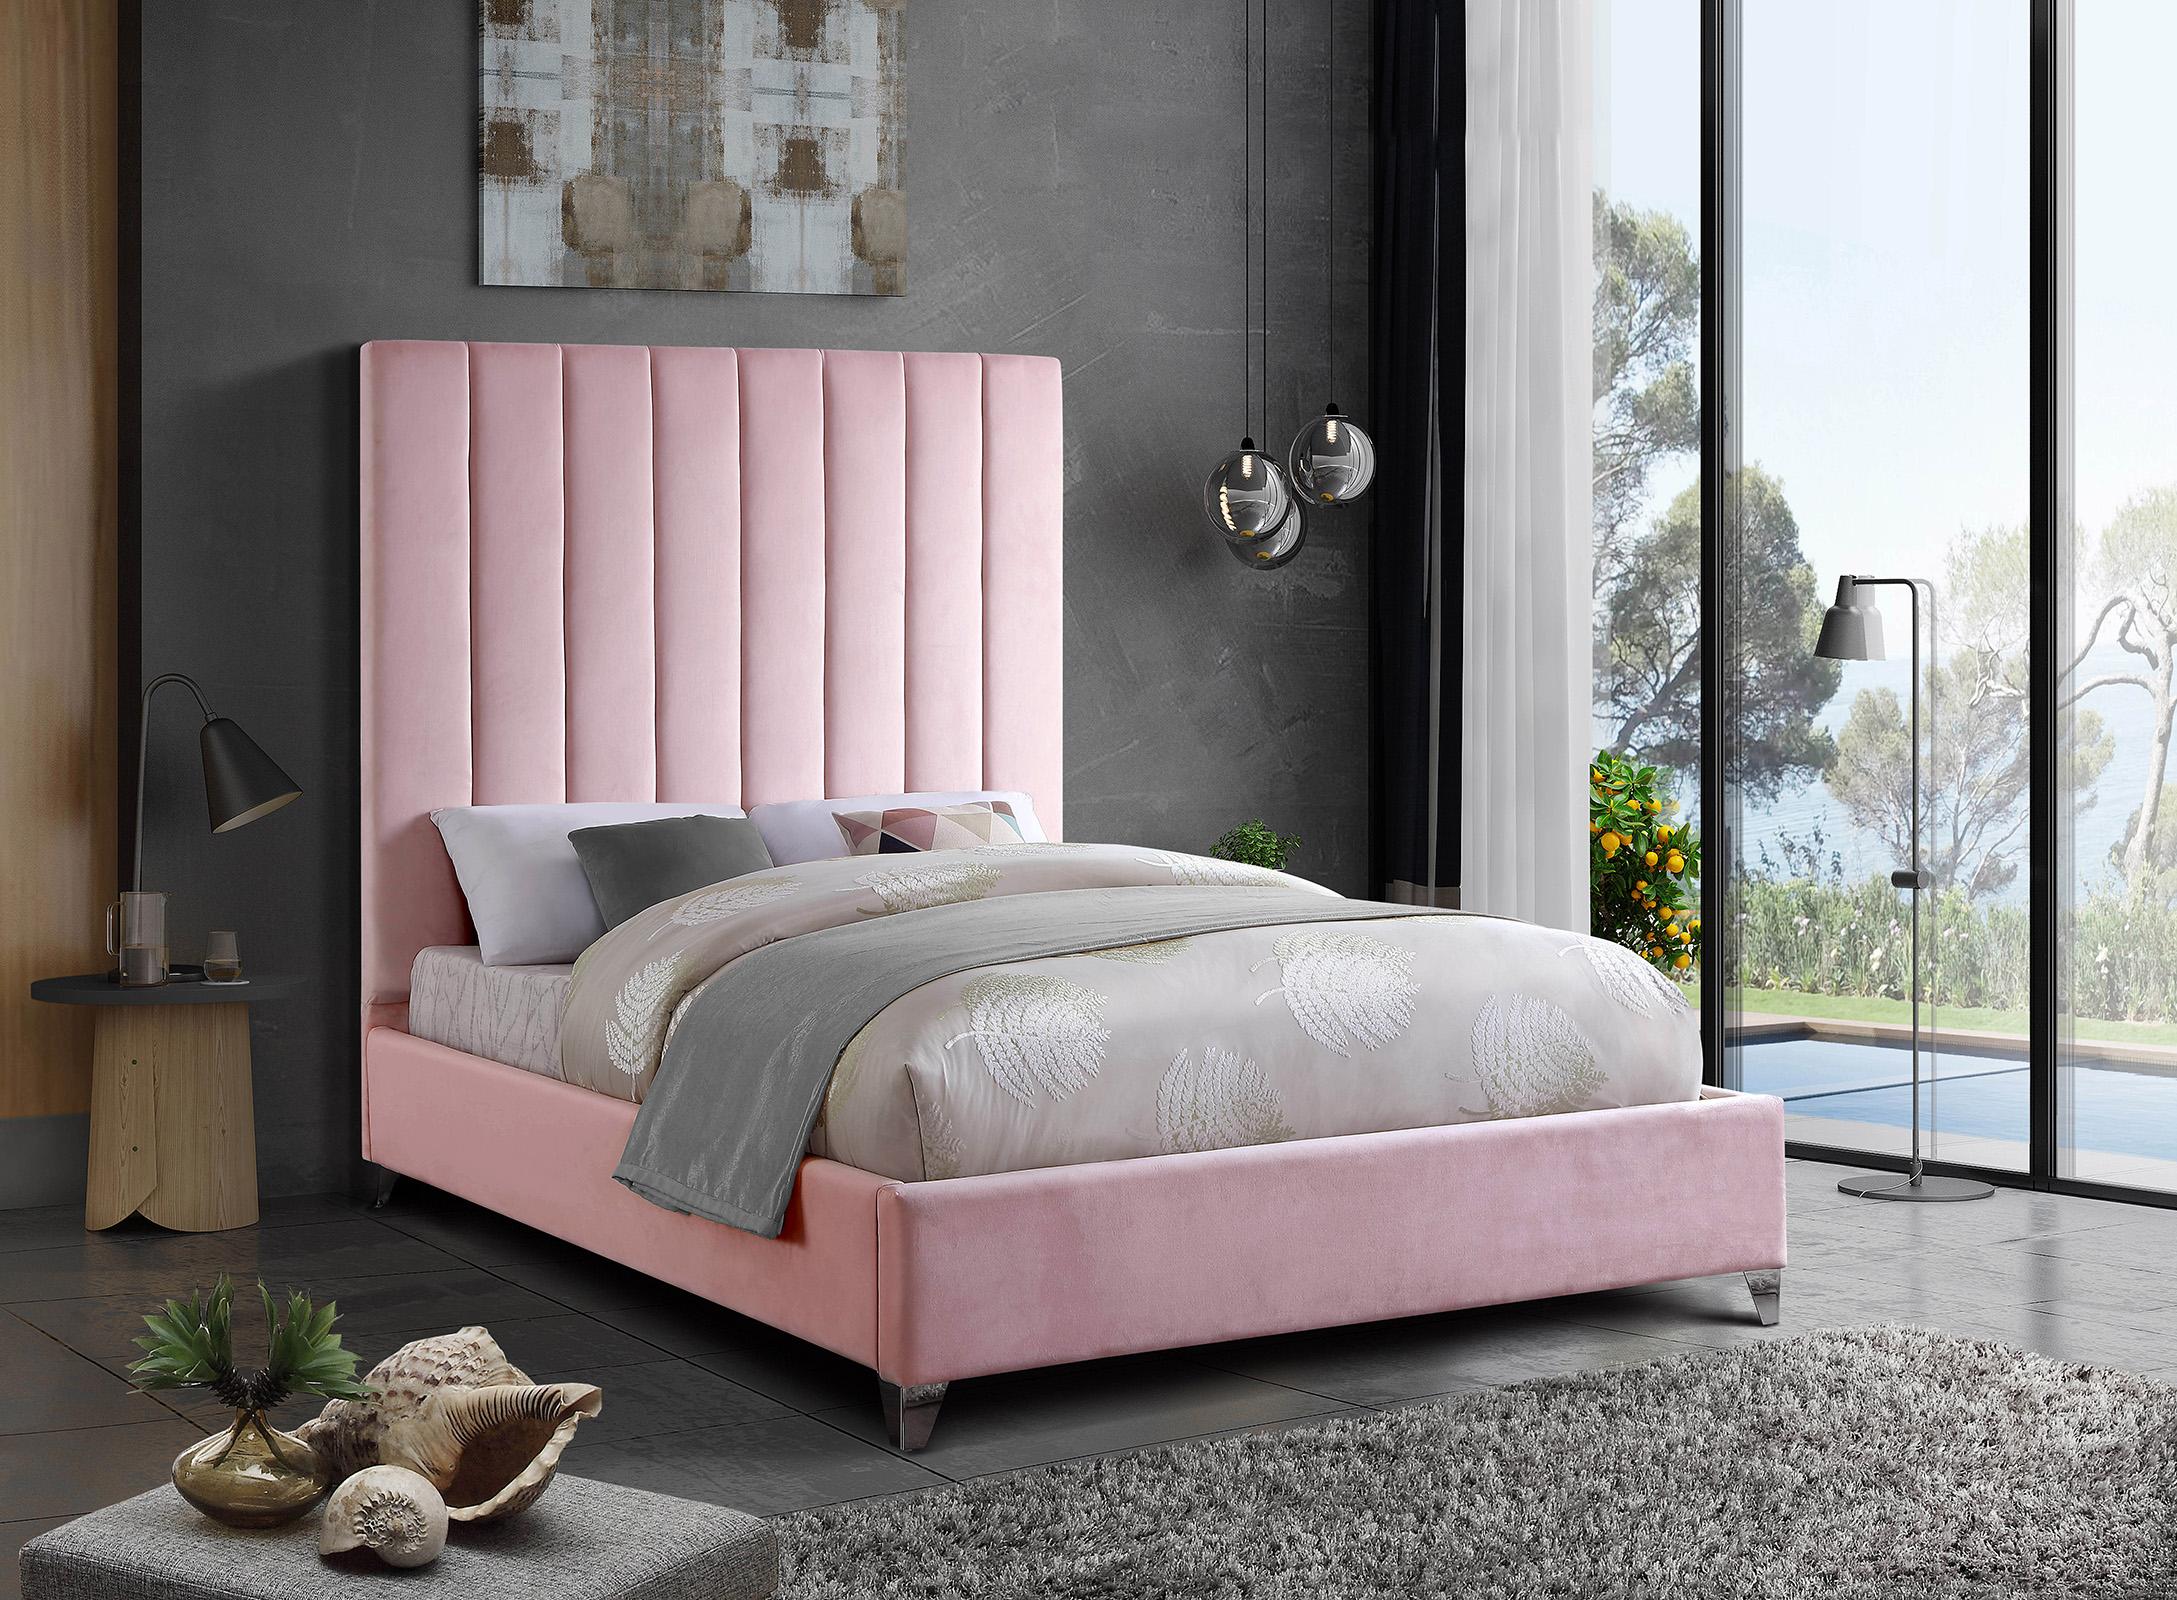 

    
ViaPink-F Meridian Furniture Platform Bed
